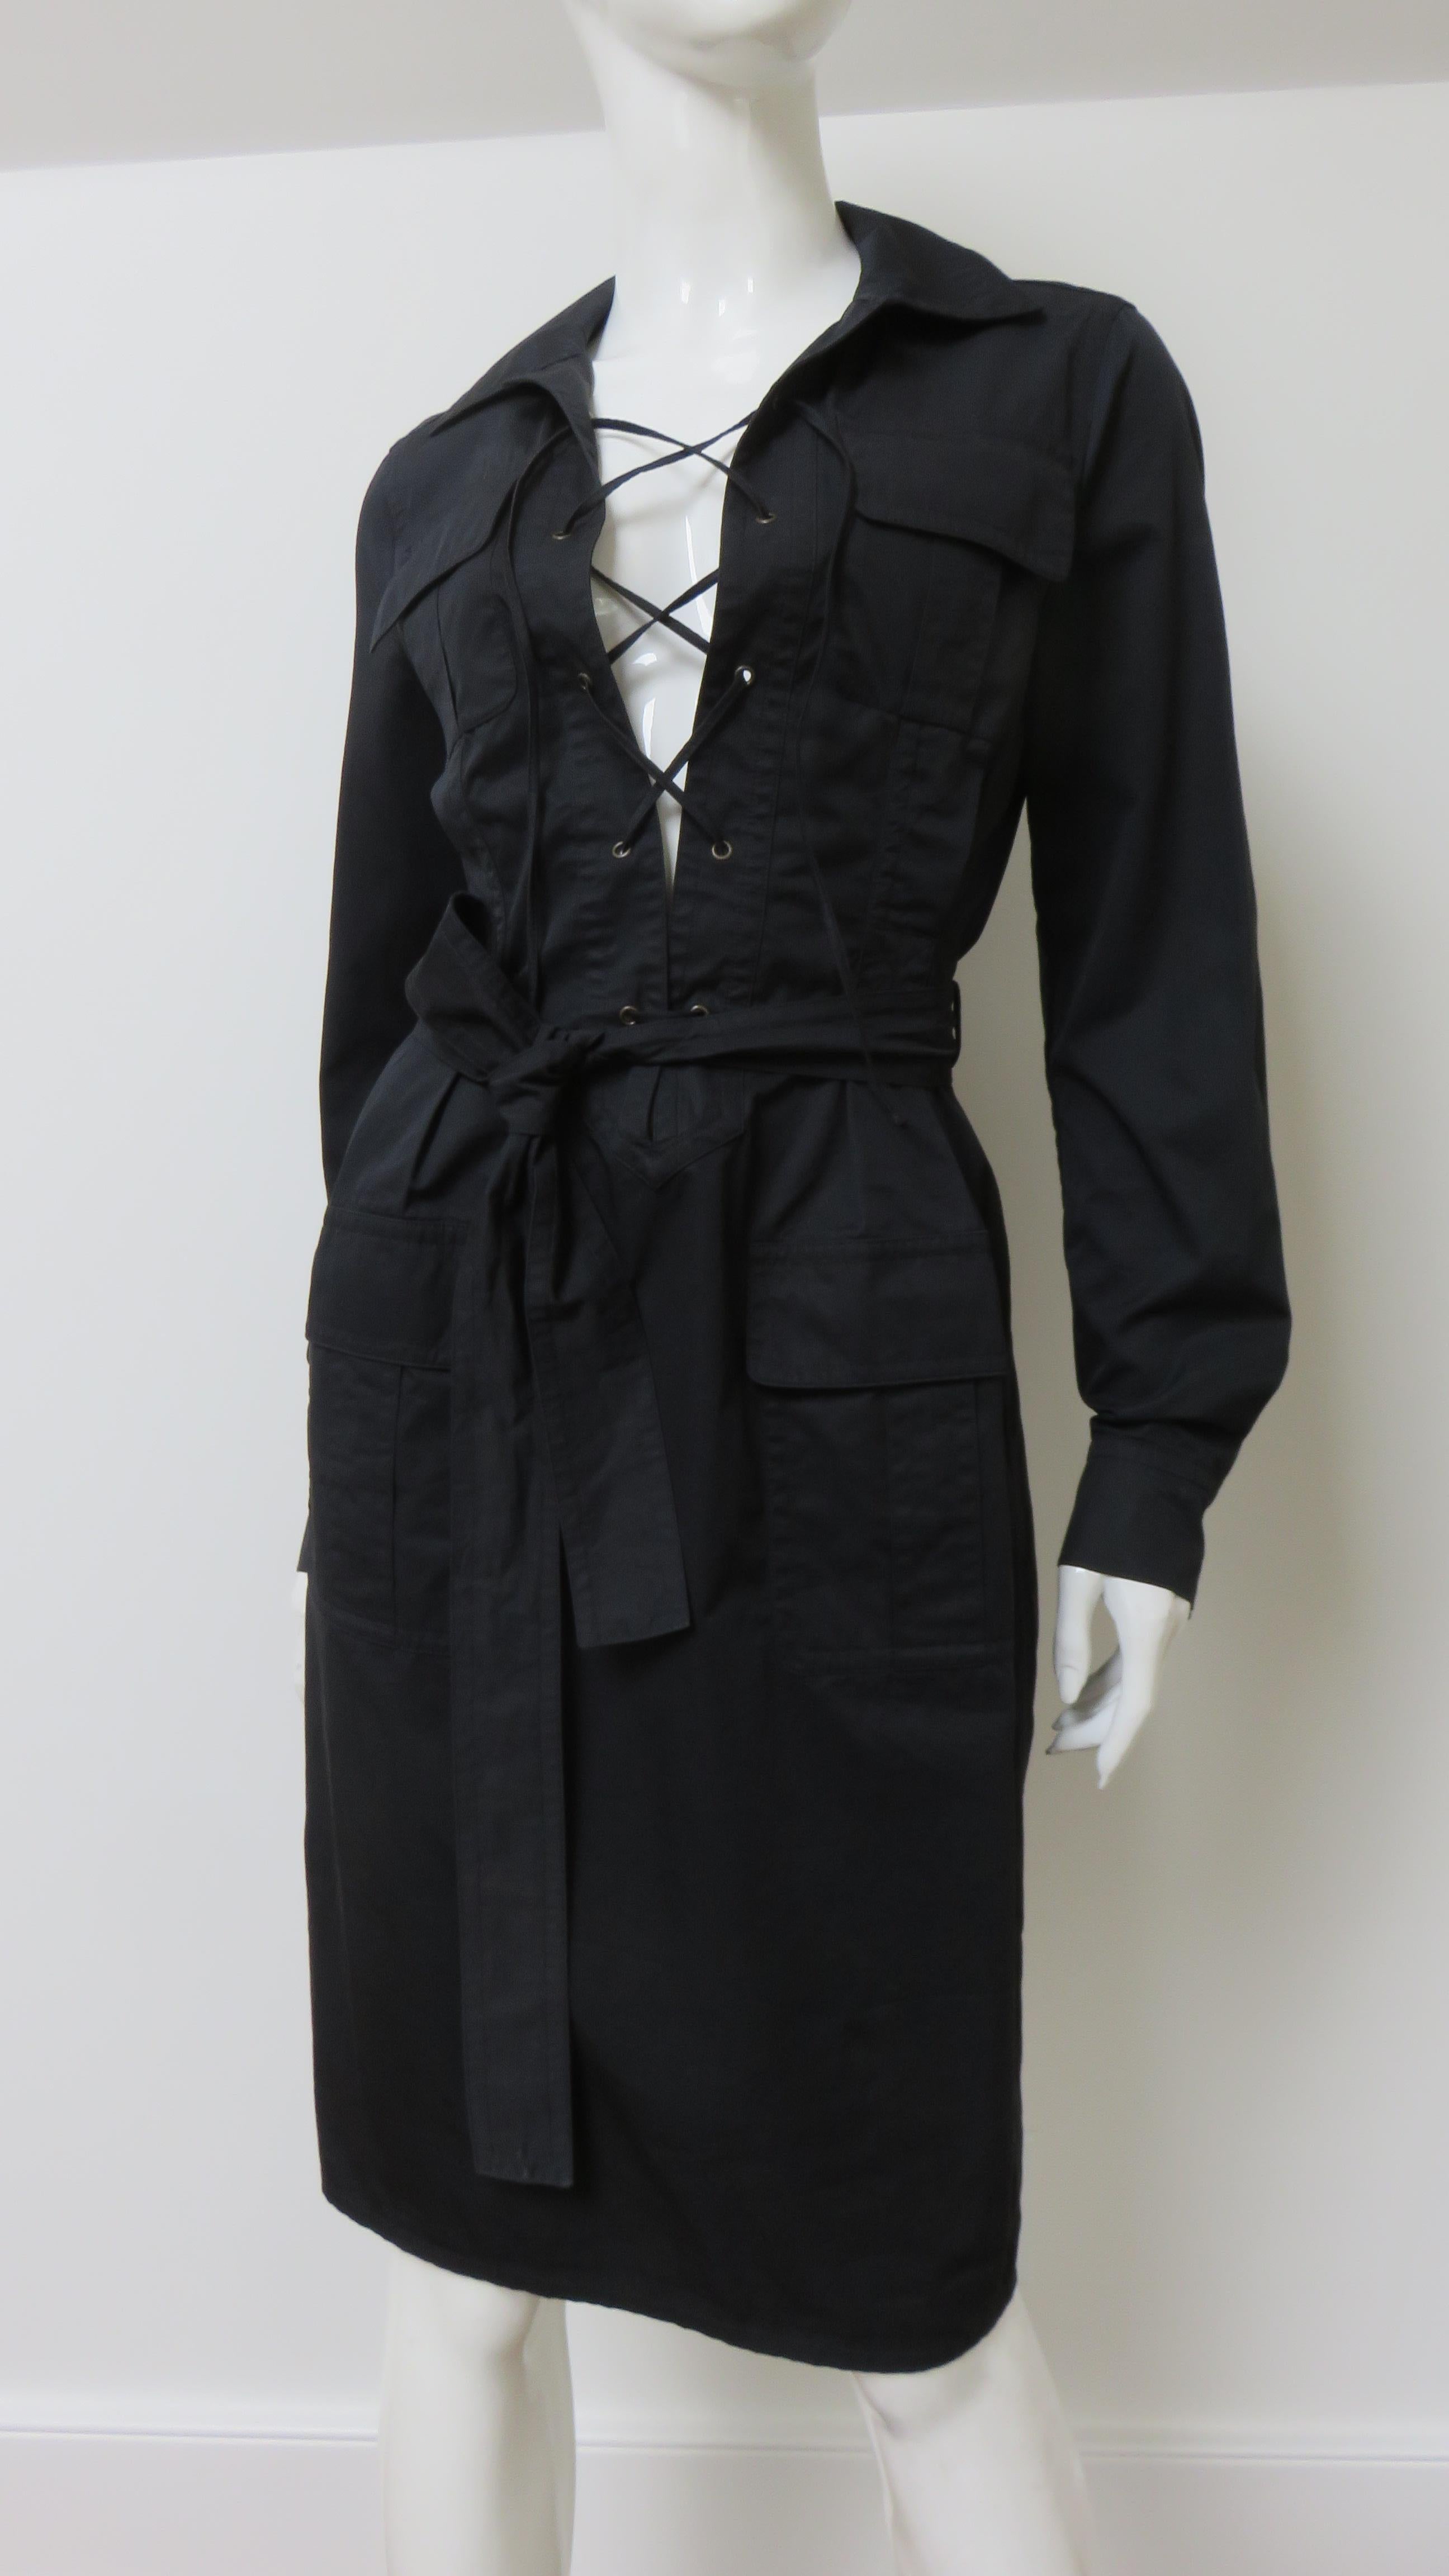 Ein fabelhaftes Kleid aus feiner schwarzer, polierter Baumwolle von Tom Ford für Yves St. Laurent.  Als Anspielung auf die berühmte Safari-Kollektion von St. Laurent aus dem Jahr 1968 weist sie ähnliche Merkmale auf - Hemdkragen, 4 aufgesetzte